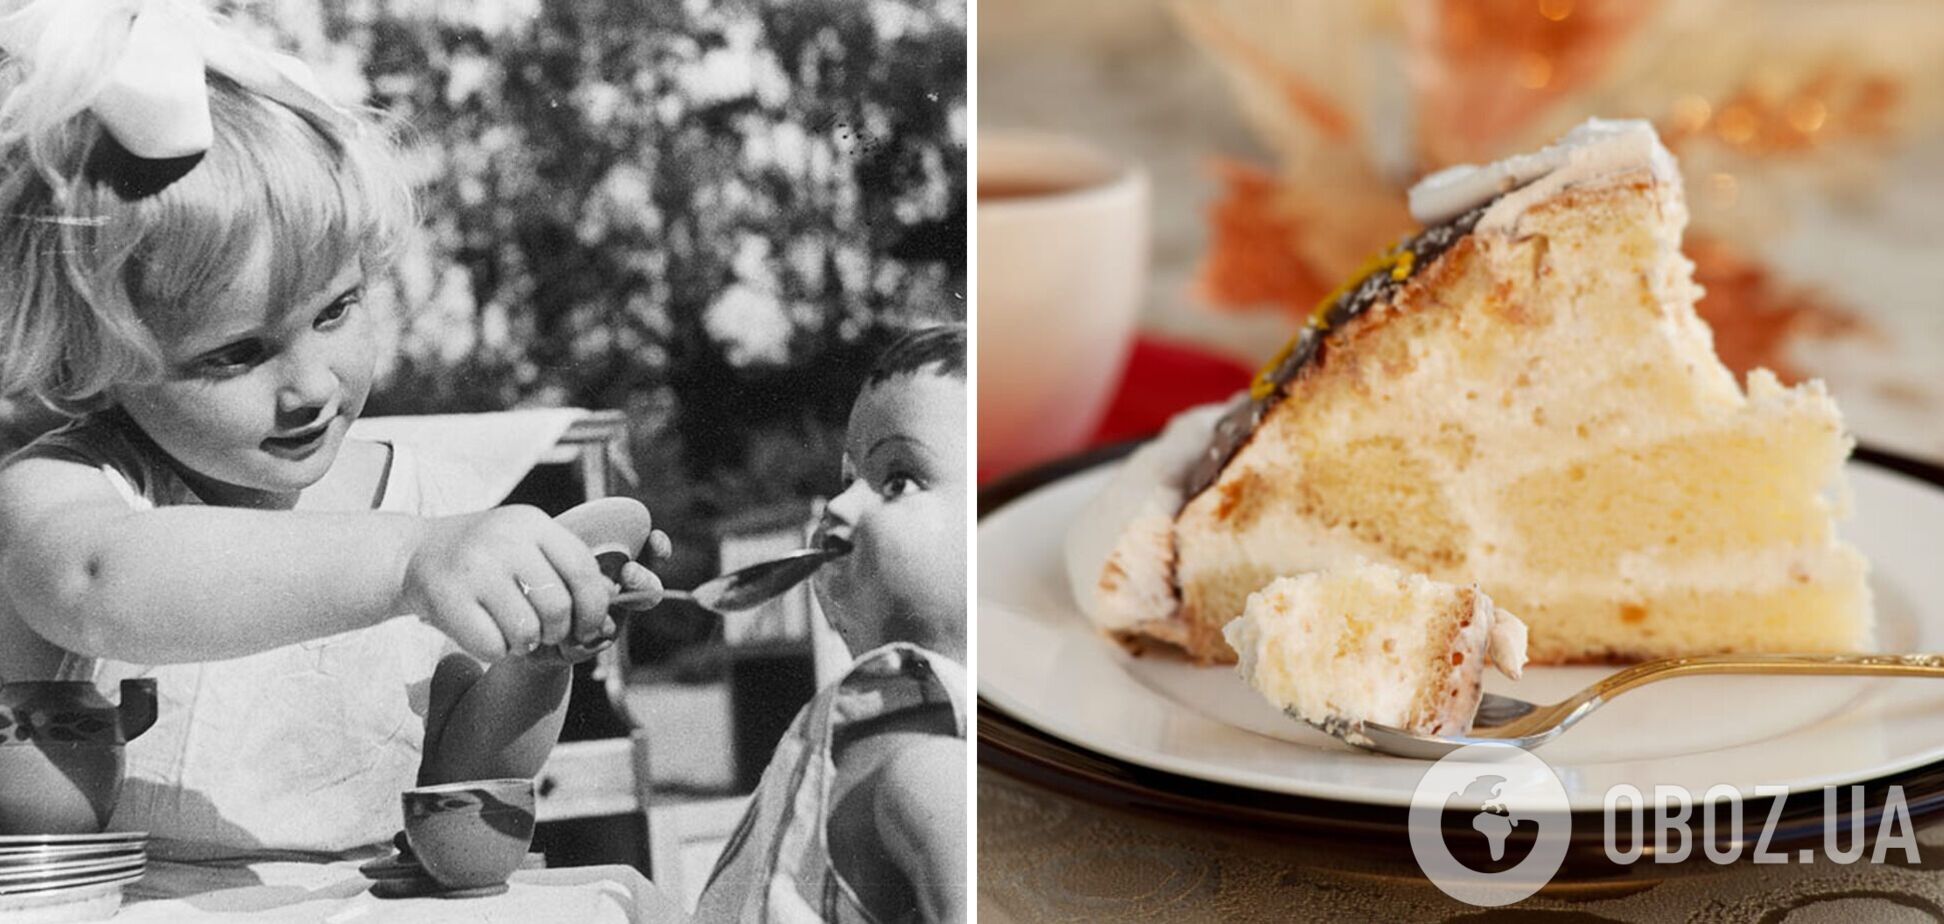 Забытый торт из СССР 'Черепашка': как повторить популярный десерт